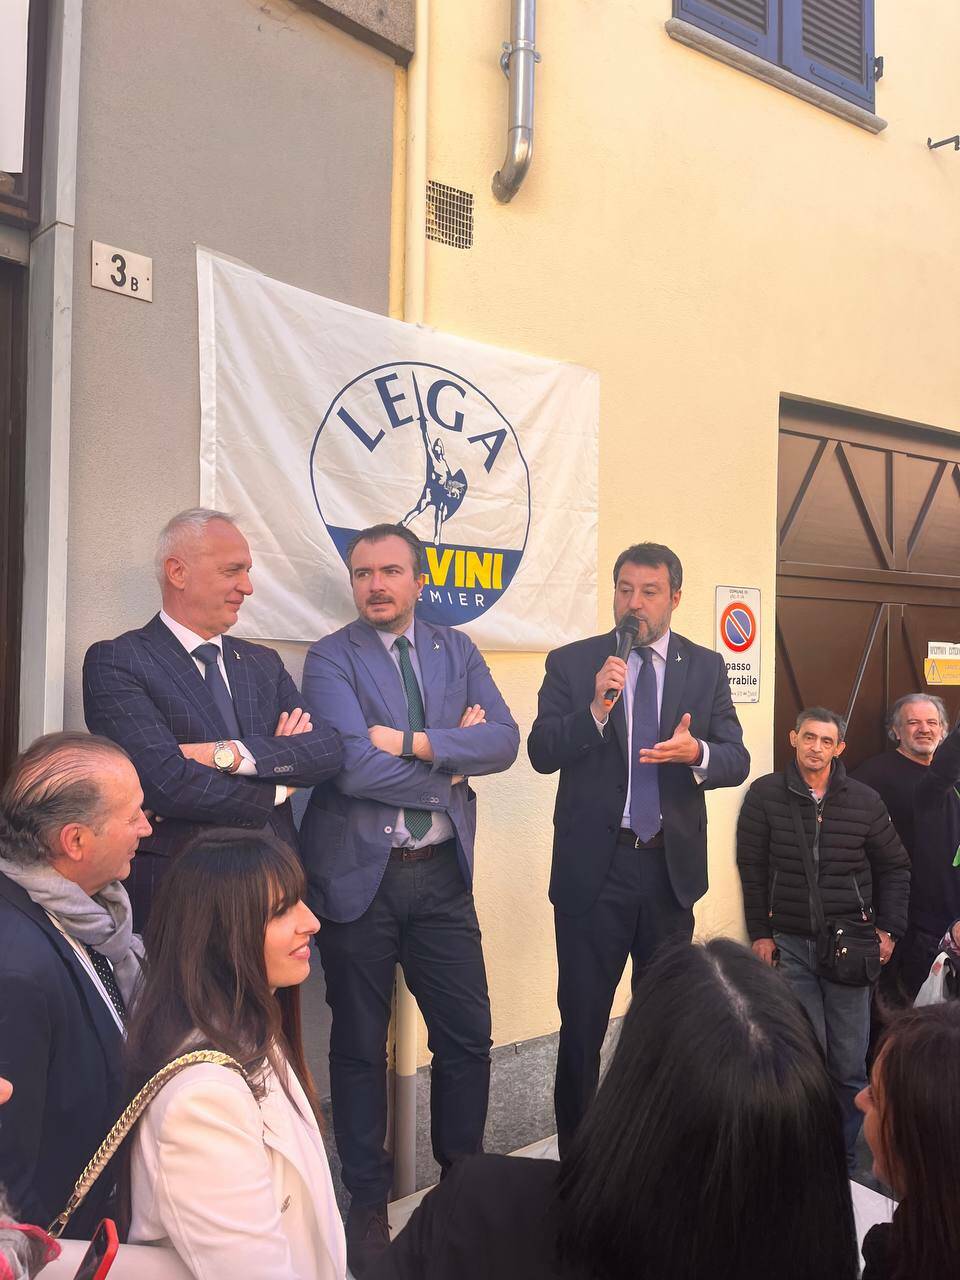 La visita del Vicepremier Salvini in Granda